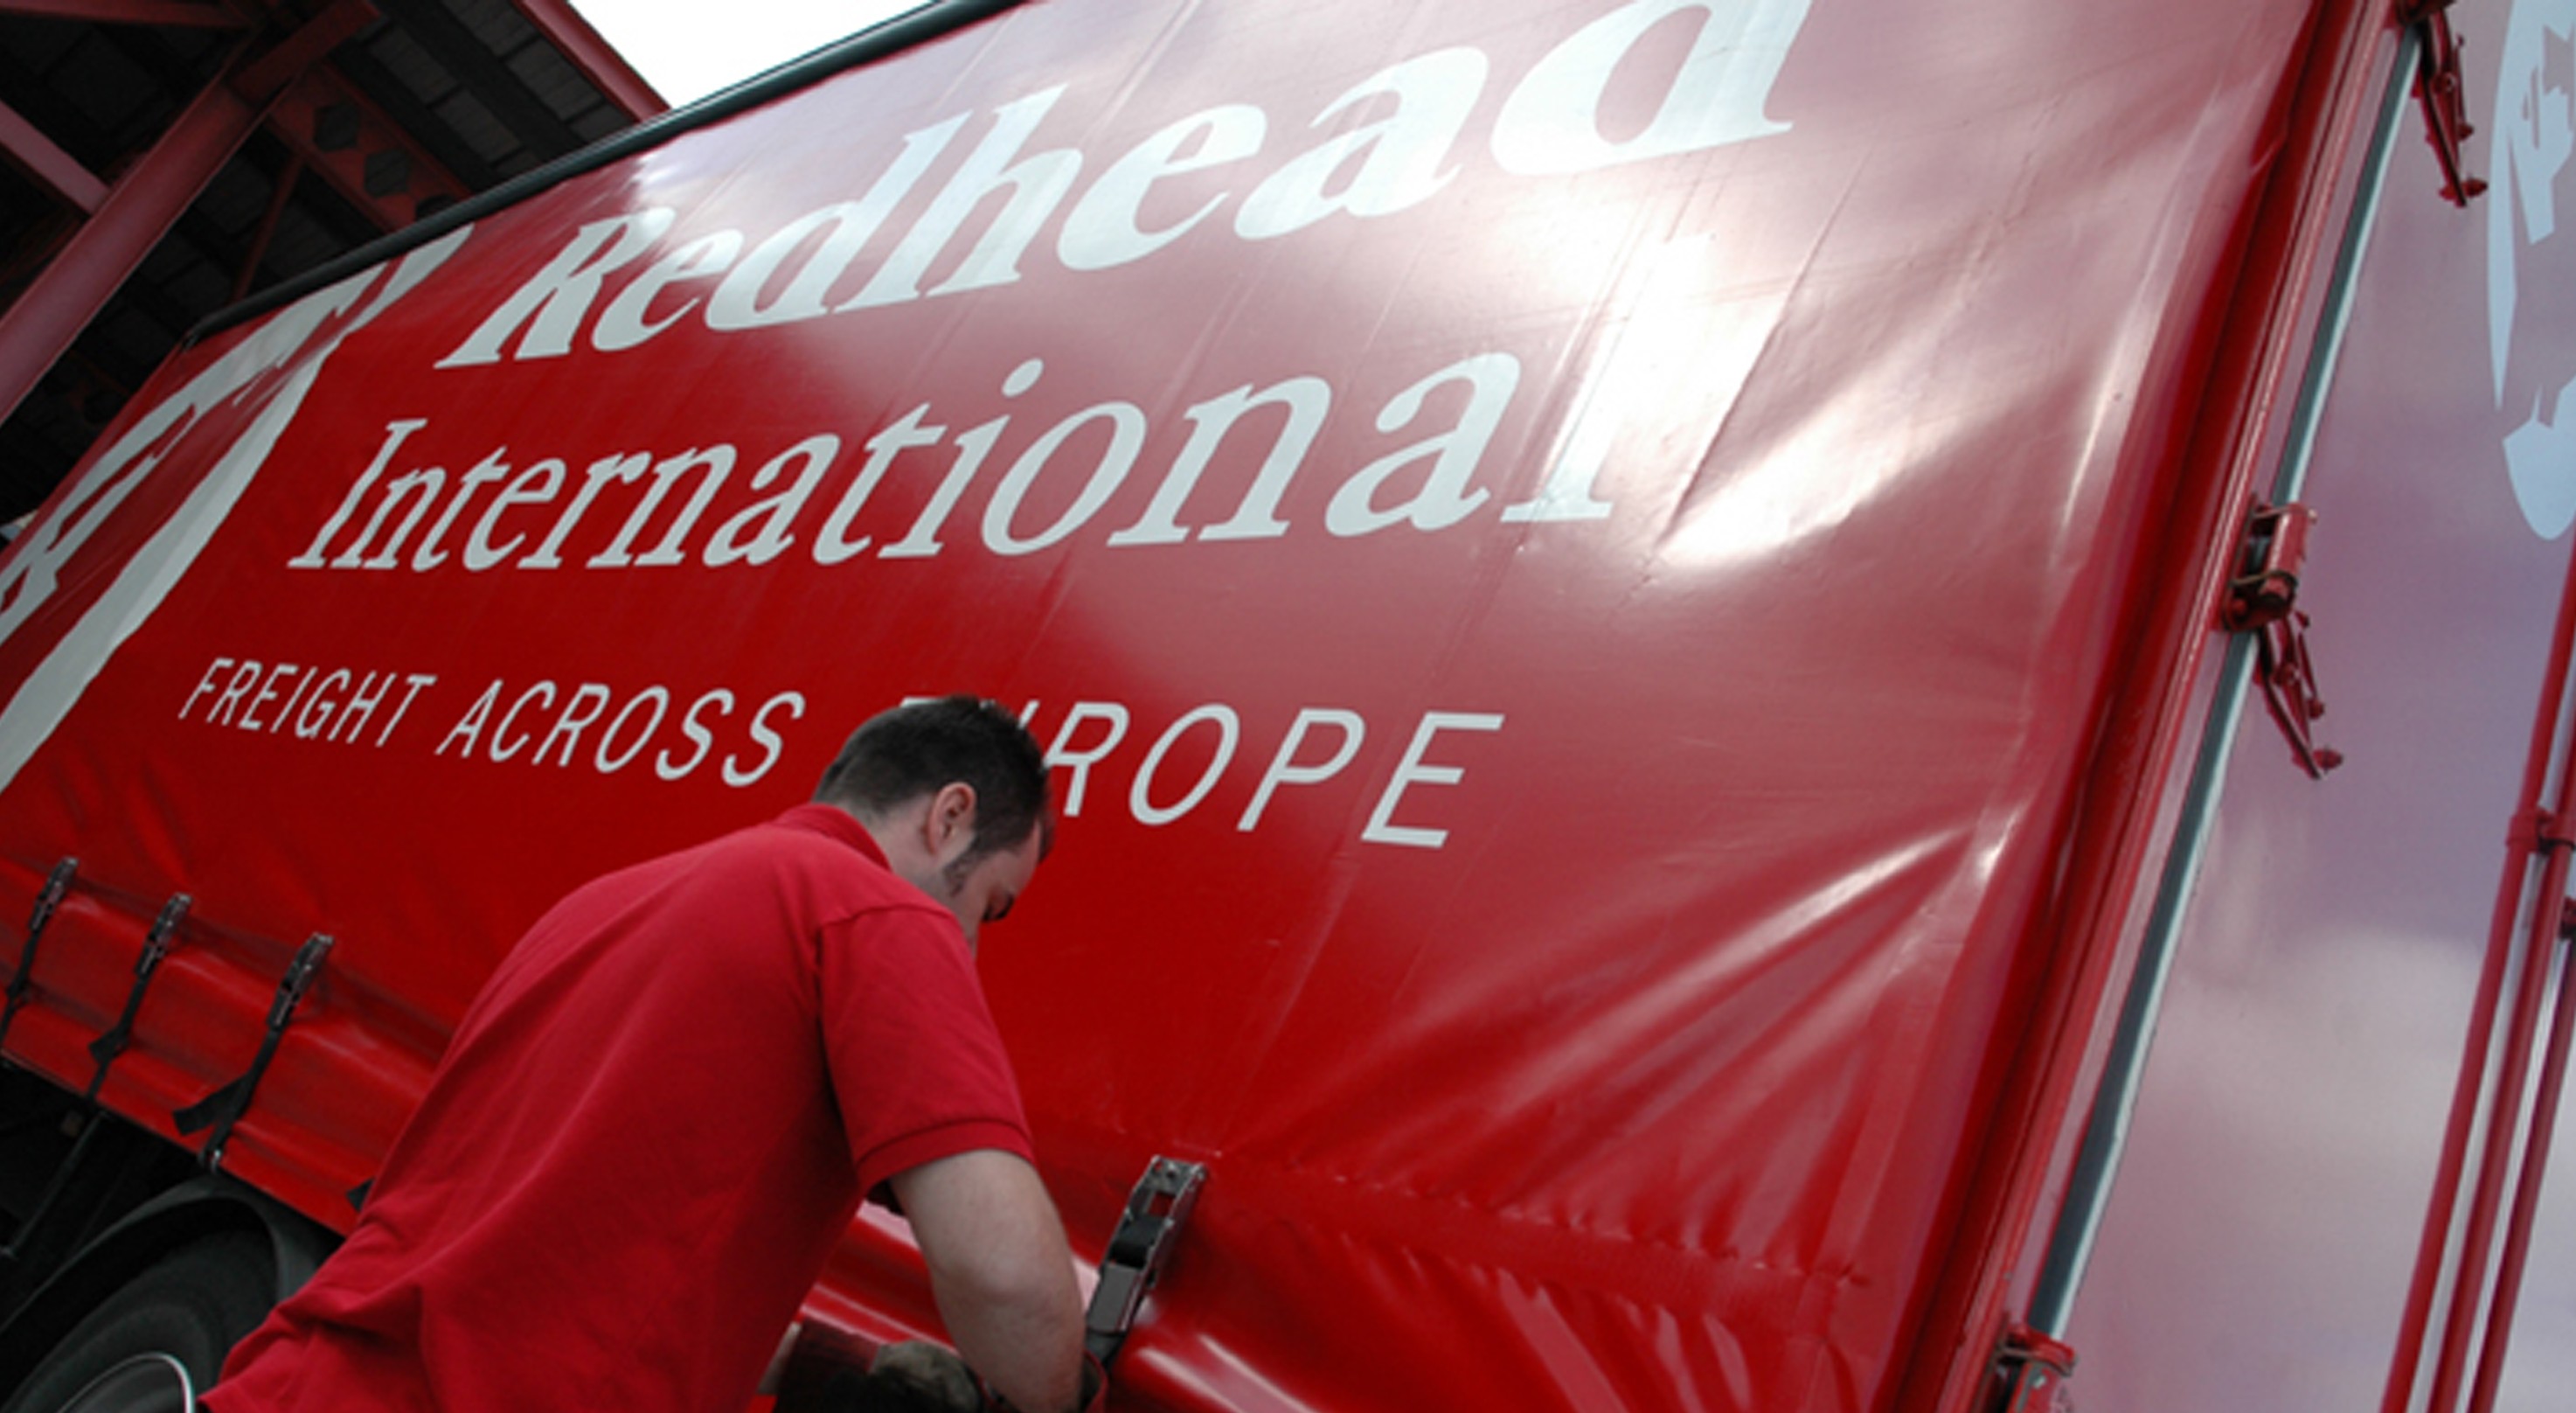 Логистический оператор «Redhead» пополнил свою структуру новым складом в Мидленс. Redhead International